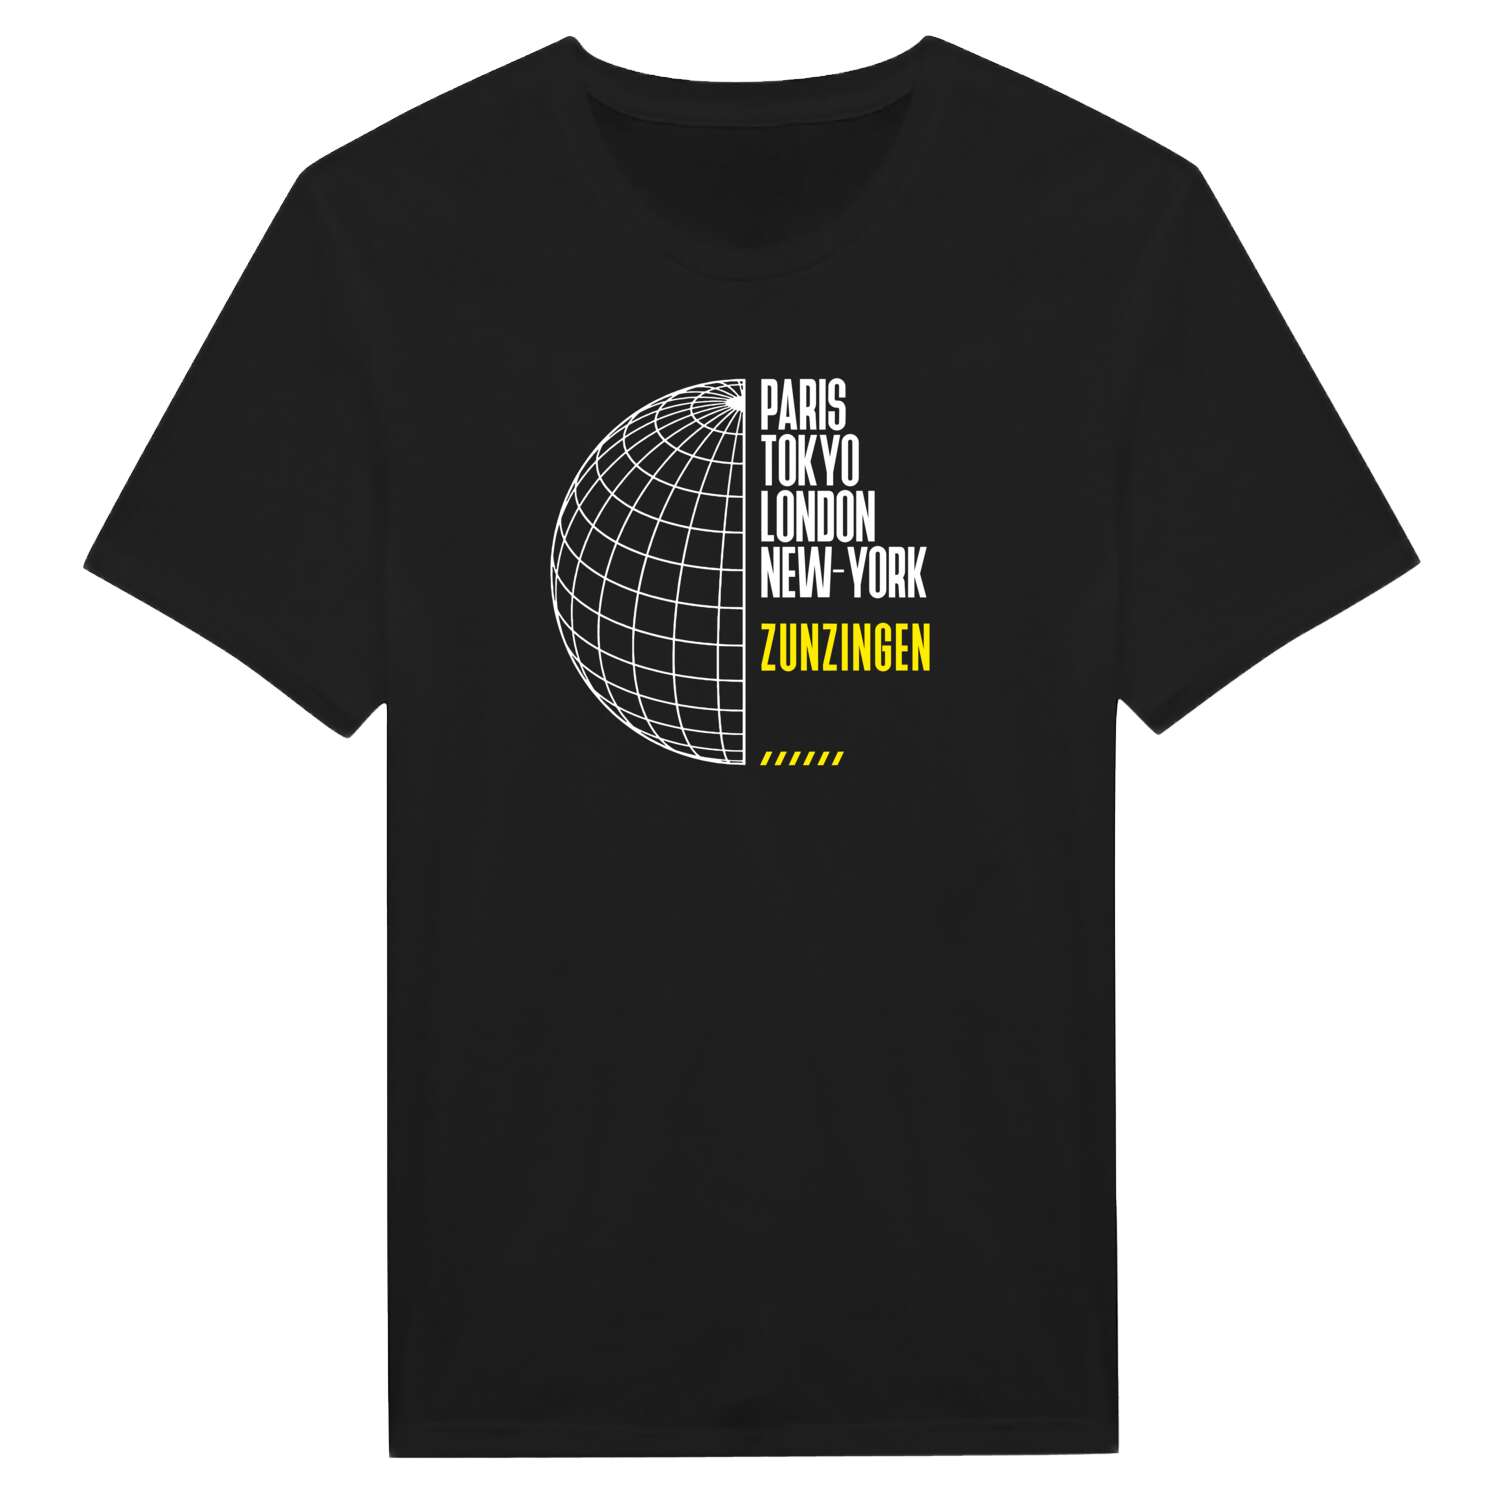 Zunzingen T-Shirt »Paris Tokyo London«